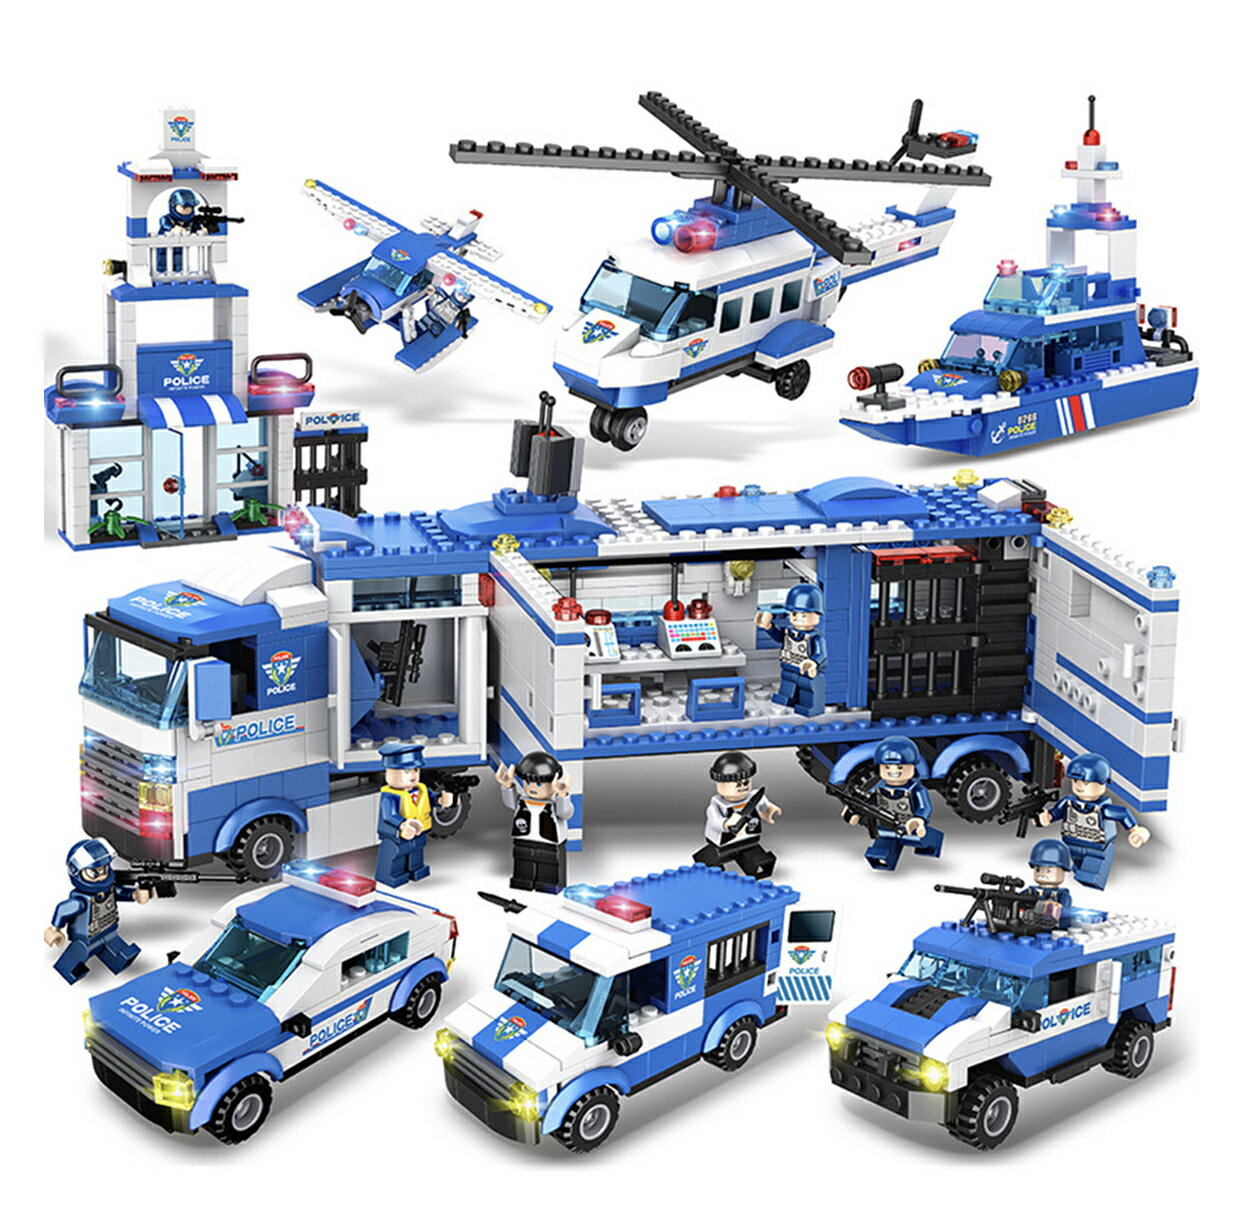 ビルディングブロック ヘリコプター 警察おもちゃ LEGO交換品 ビルディングブロック シティポリス ブロックおもちゃ 積み木 パトカーおもちゃ 警察車両 知育玩具 戦闘車両 DIY模型 6歳男の子おもちゃ